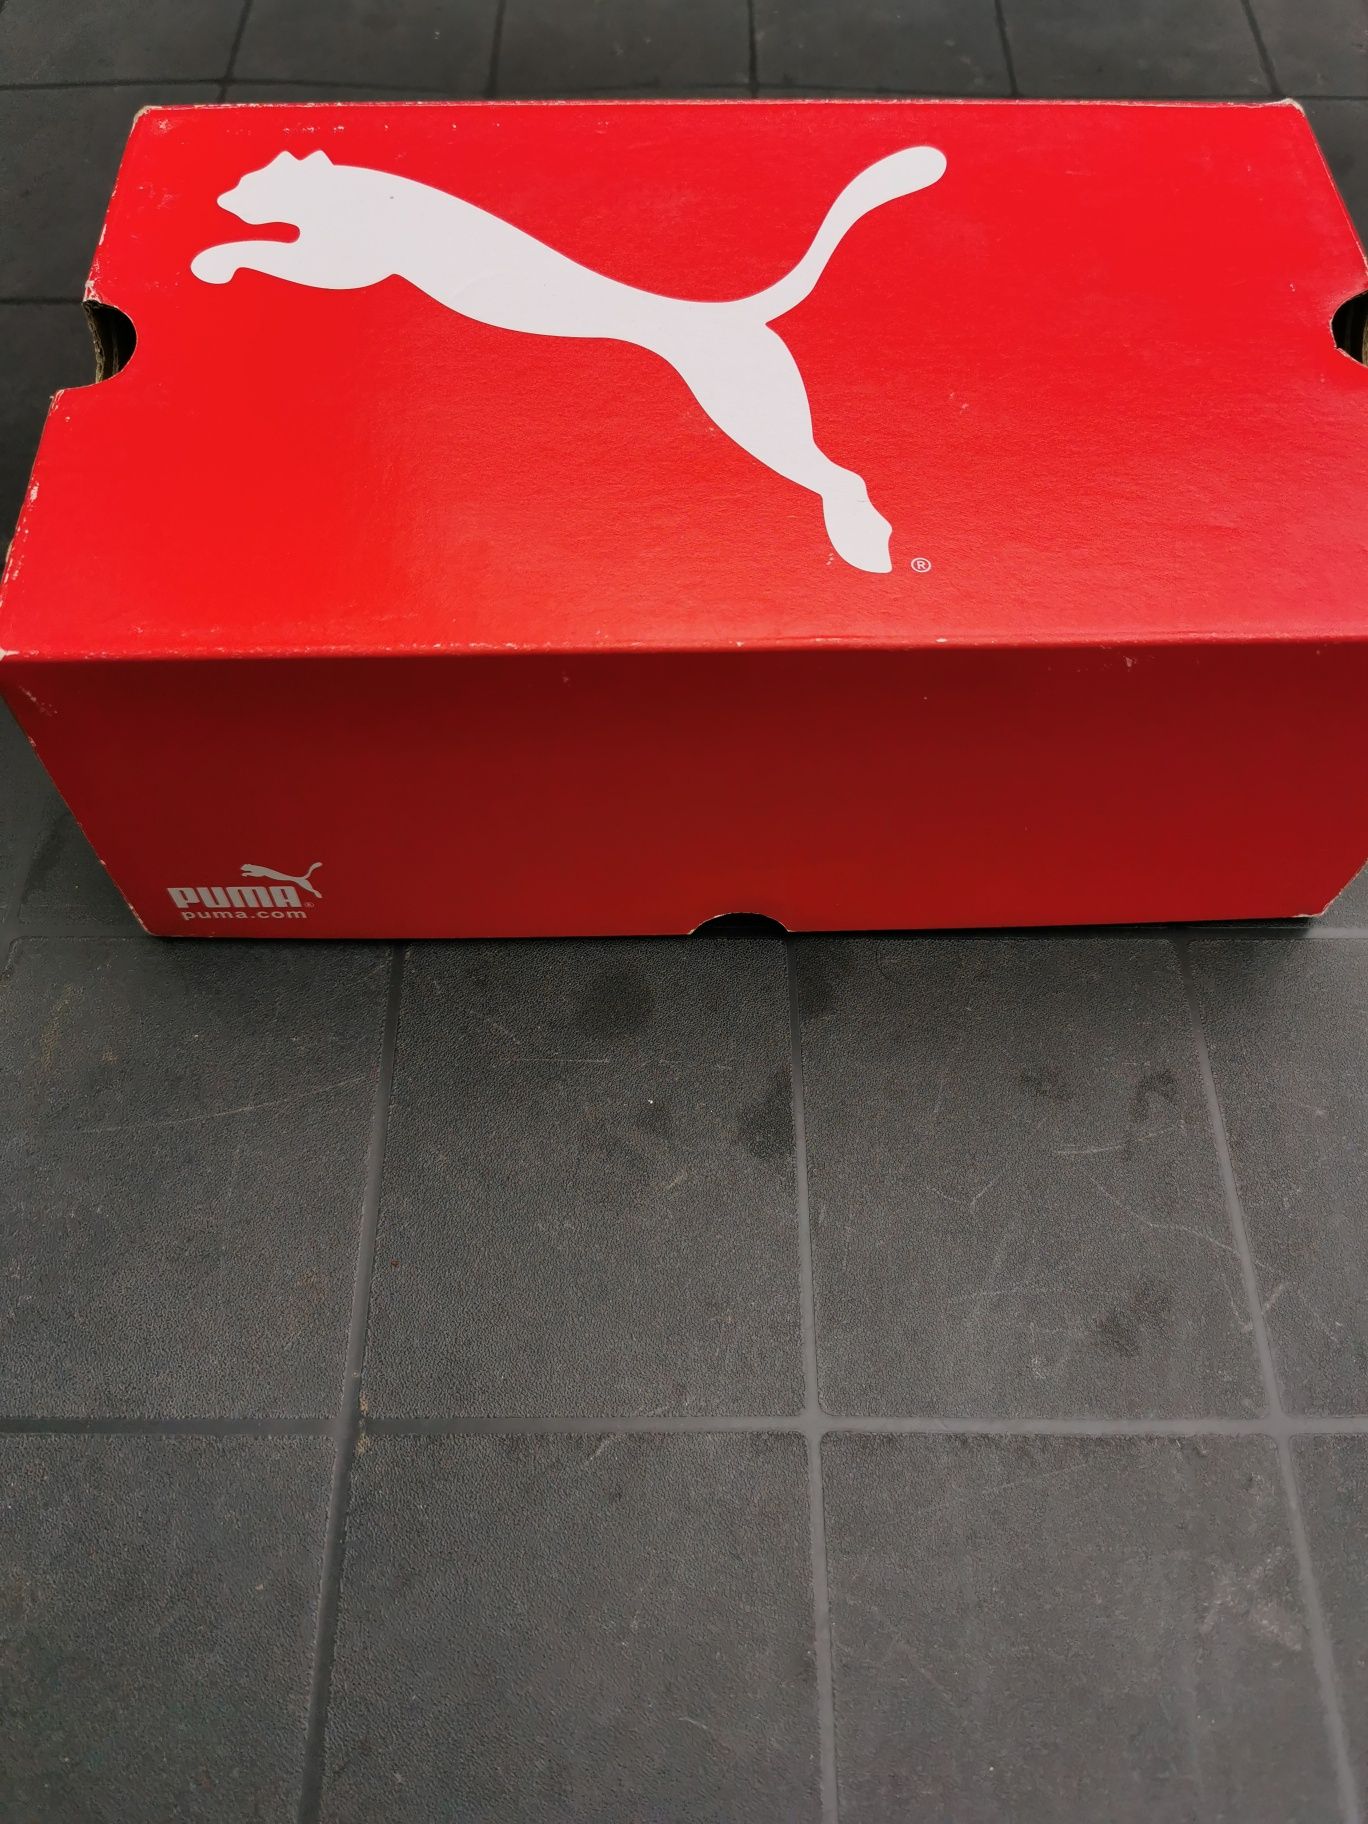 Teniși unisex Mini by Puma, măr. 38,noi, în cutie